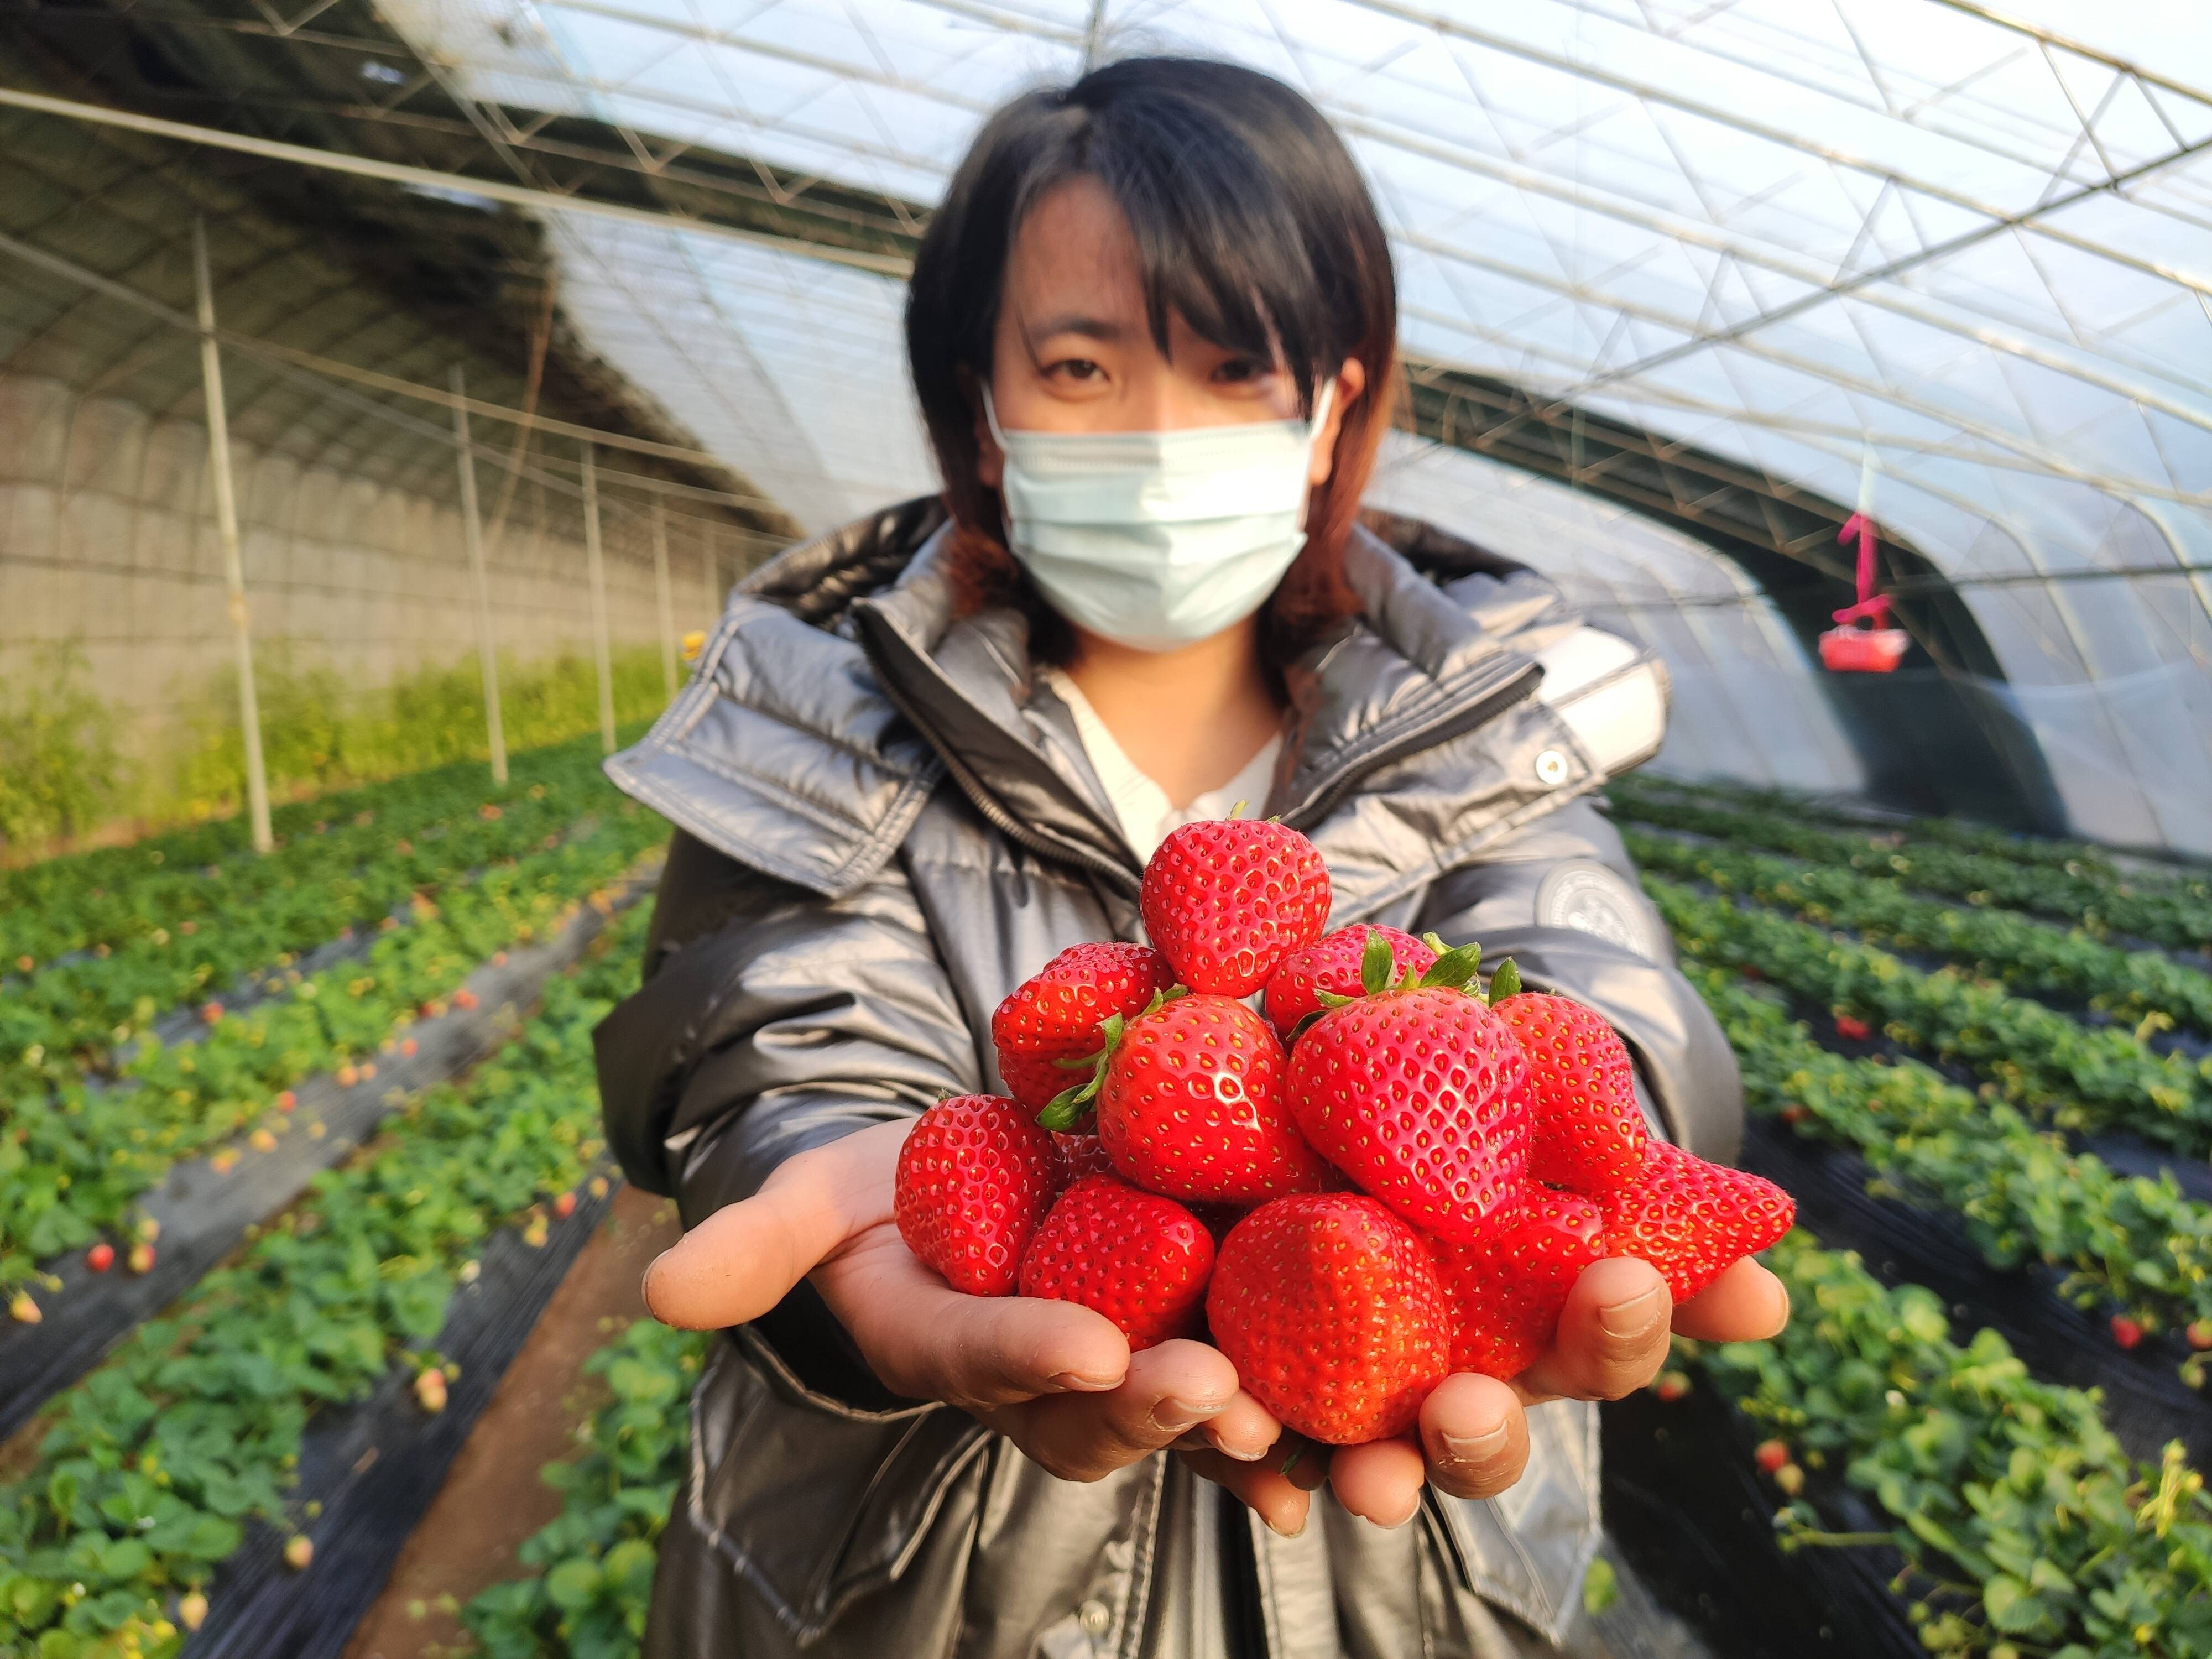 个大鲜红的草莓令人垂涎欲滴。记者 梁玉鹏 报道